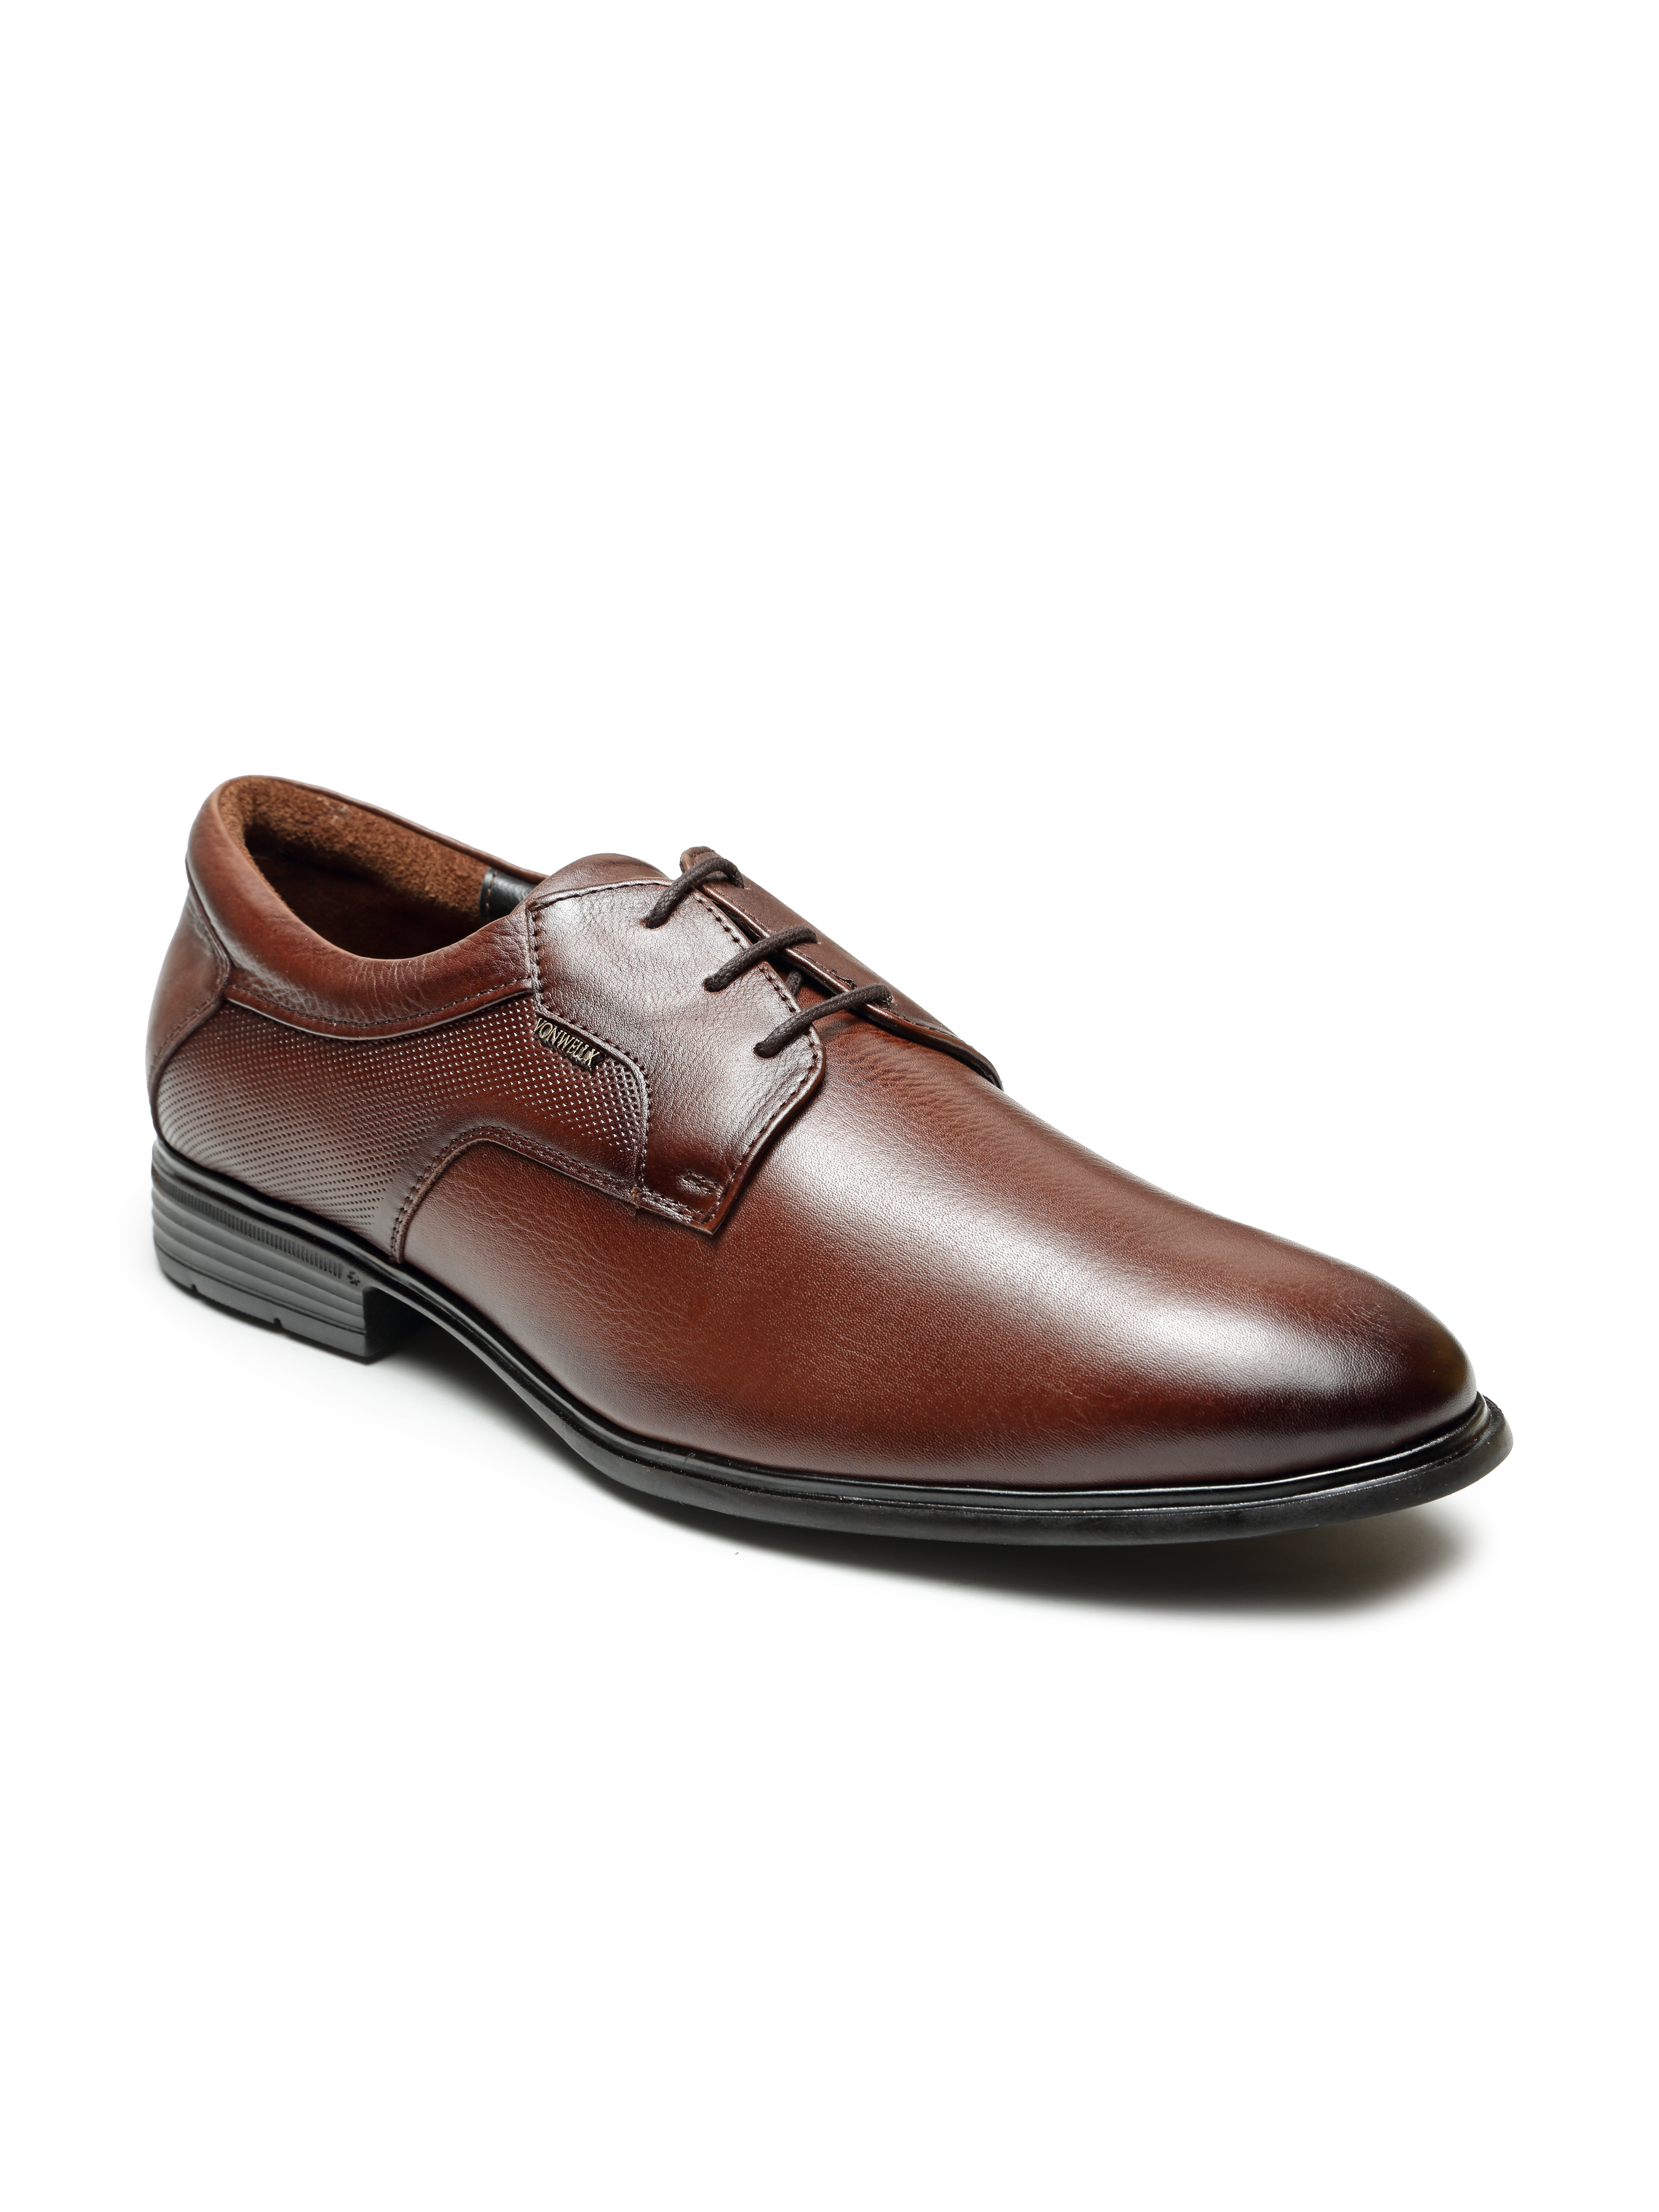 Buy Von Wellx Germany Comfort Men's Brown Formal Shoes Adler Online in Lucknow